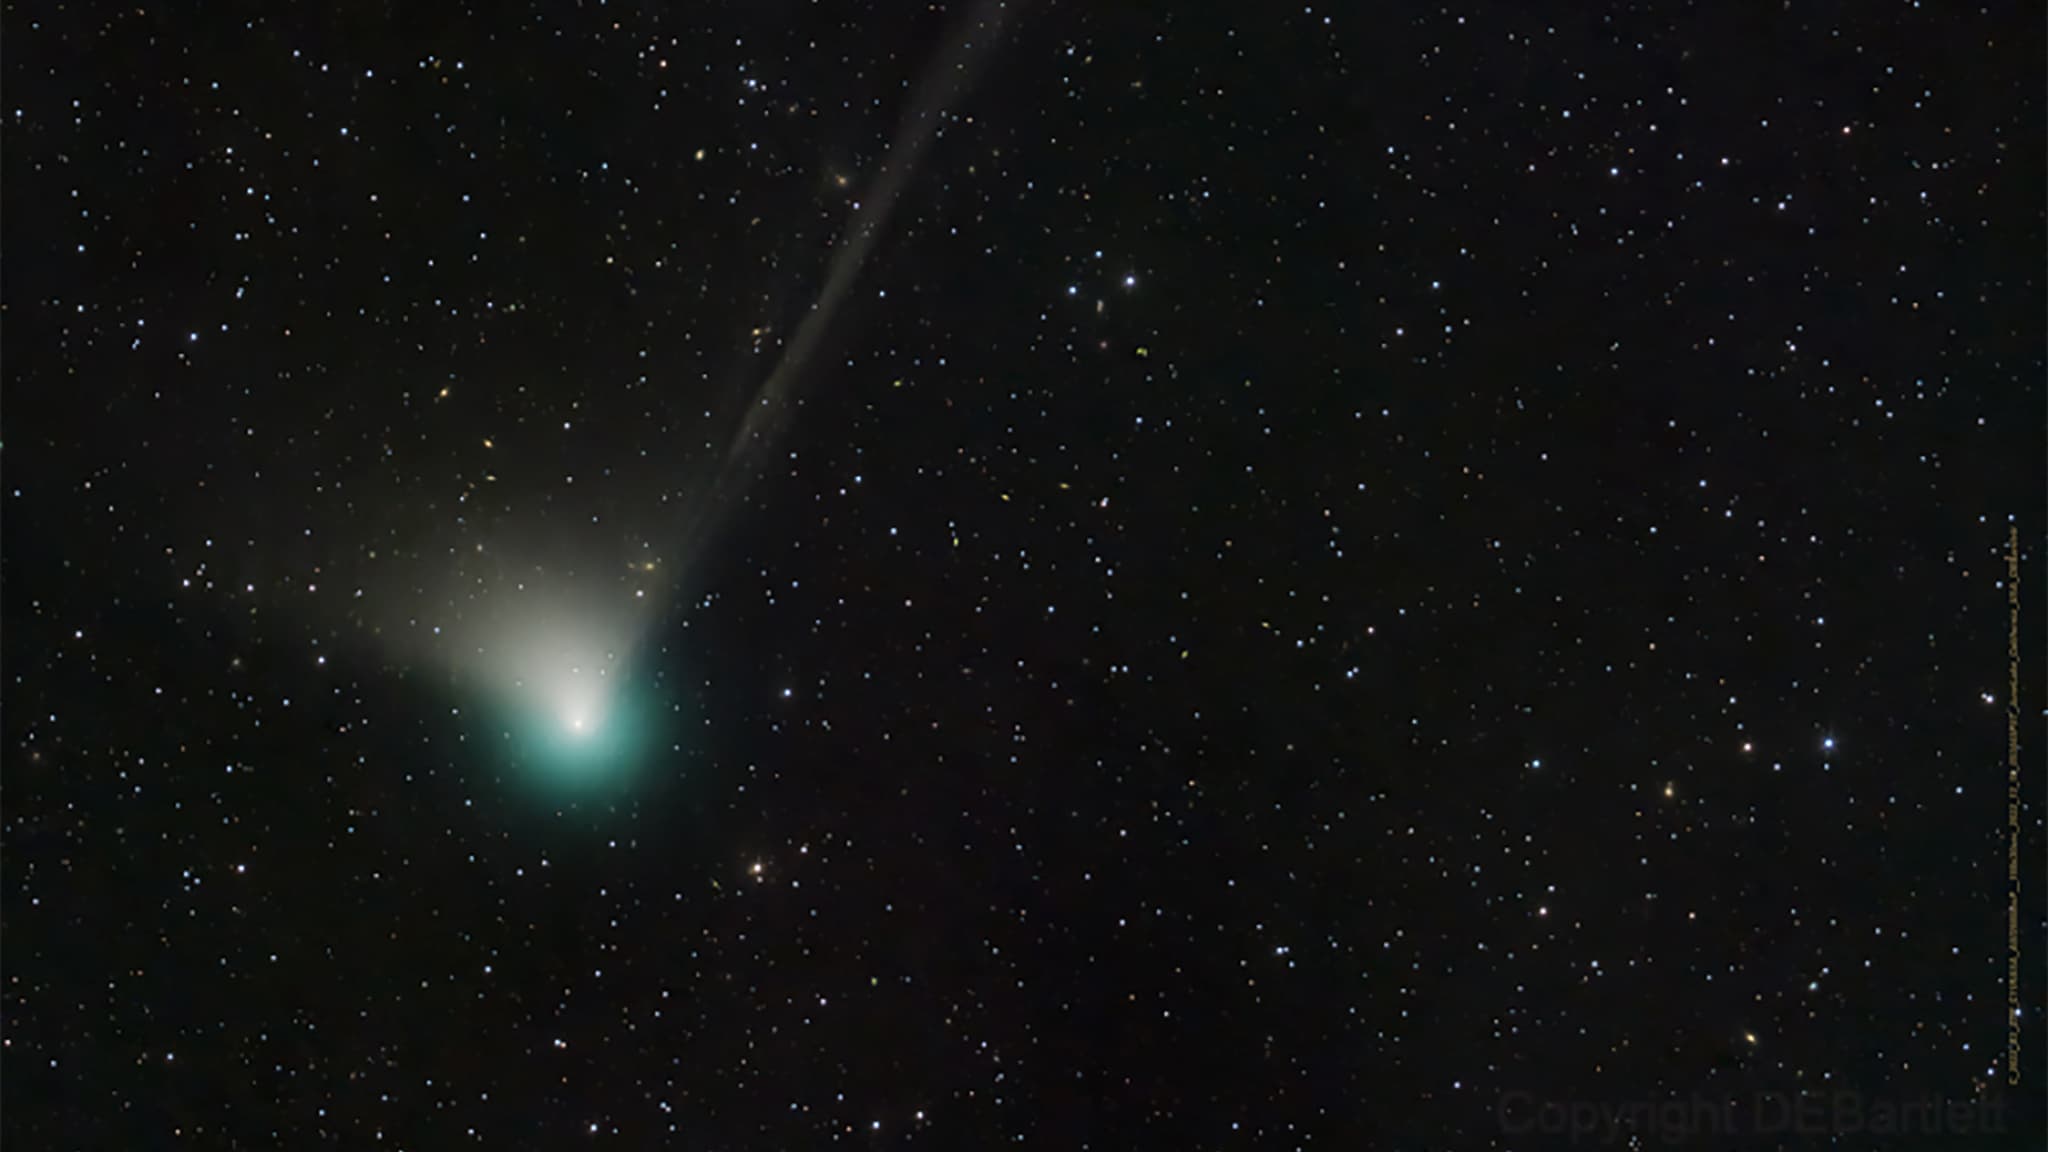 Binnenkort zal vanaf de aarde een nieuw ontdekte komeet te zien zijn, de eerste in 50.000 jaar